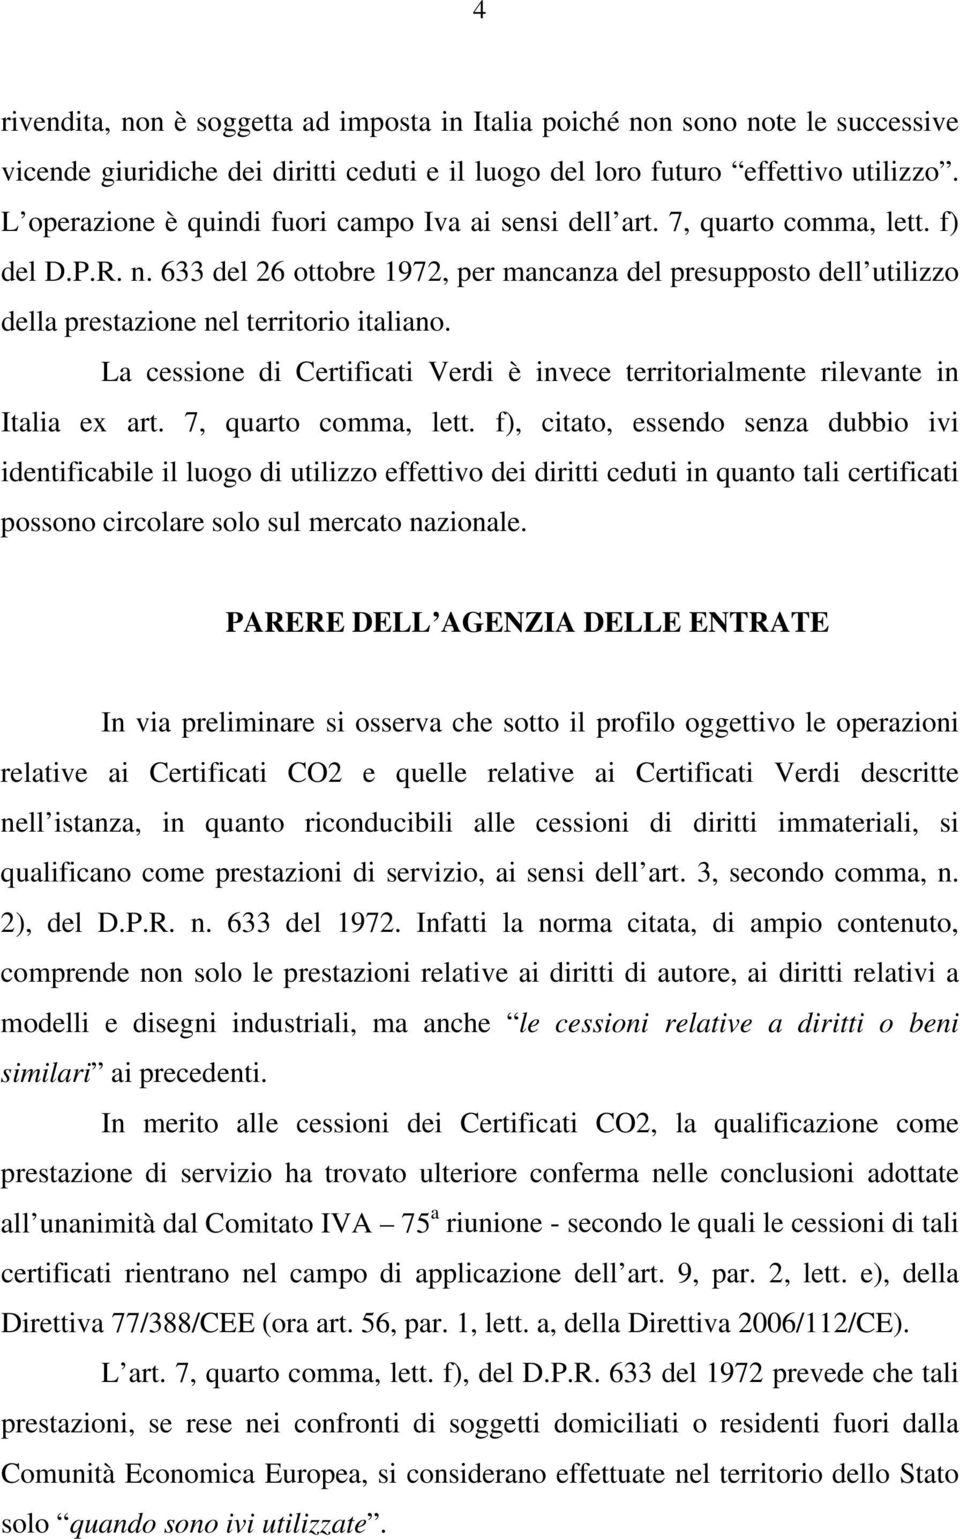 633 del 26 ottobre 1972, per mancanza del presupposto dell utilizzo della prestazione nel territorio italiano. La cessione di Certificati Verdi è invece territorialmente rilevante in Italia ex art.